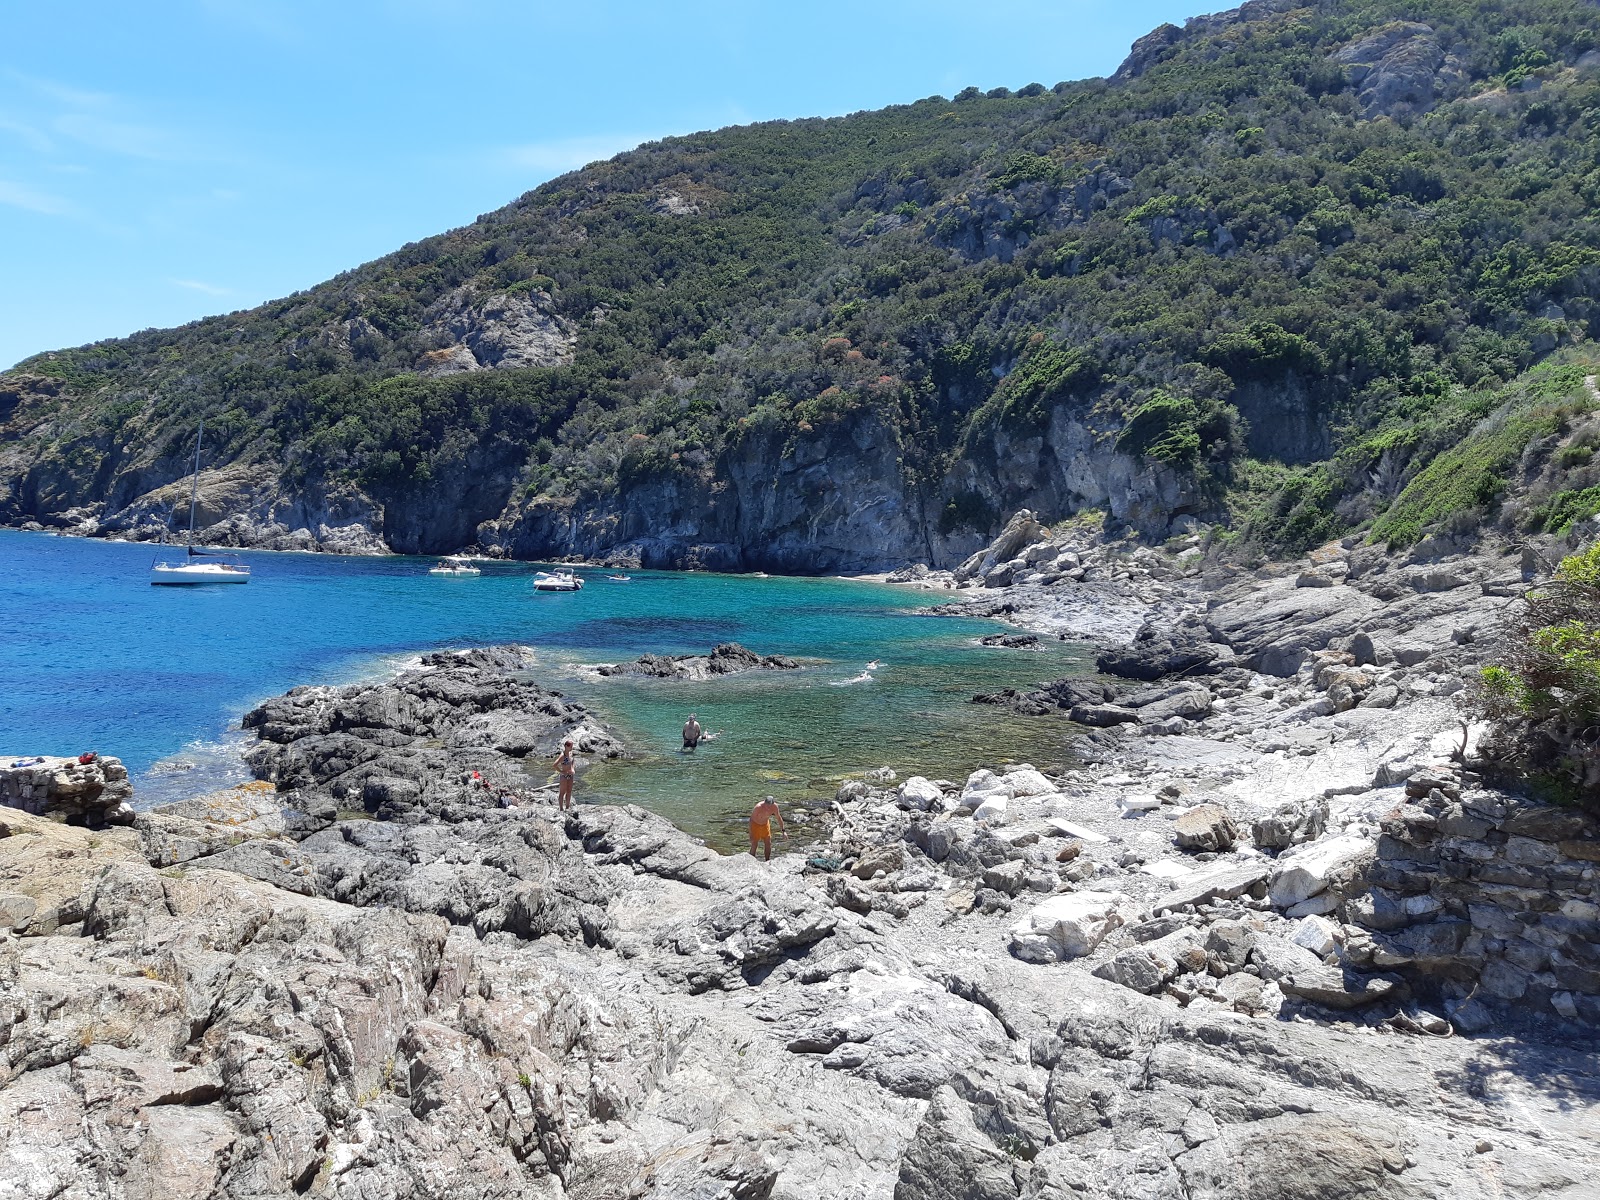 Photo of Spiaggia dello Stagnone with rocks cover surface